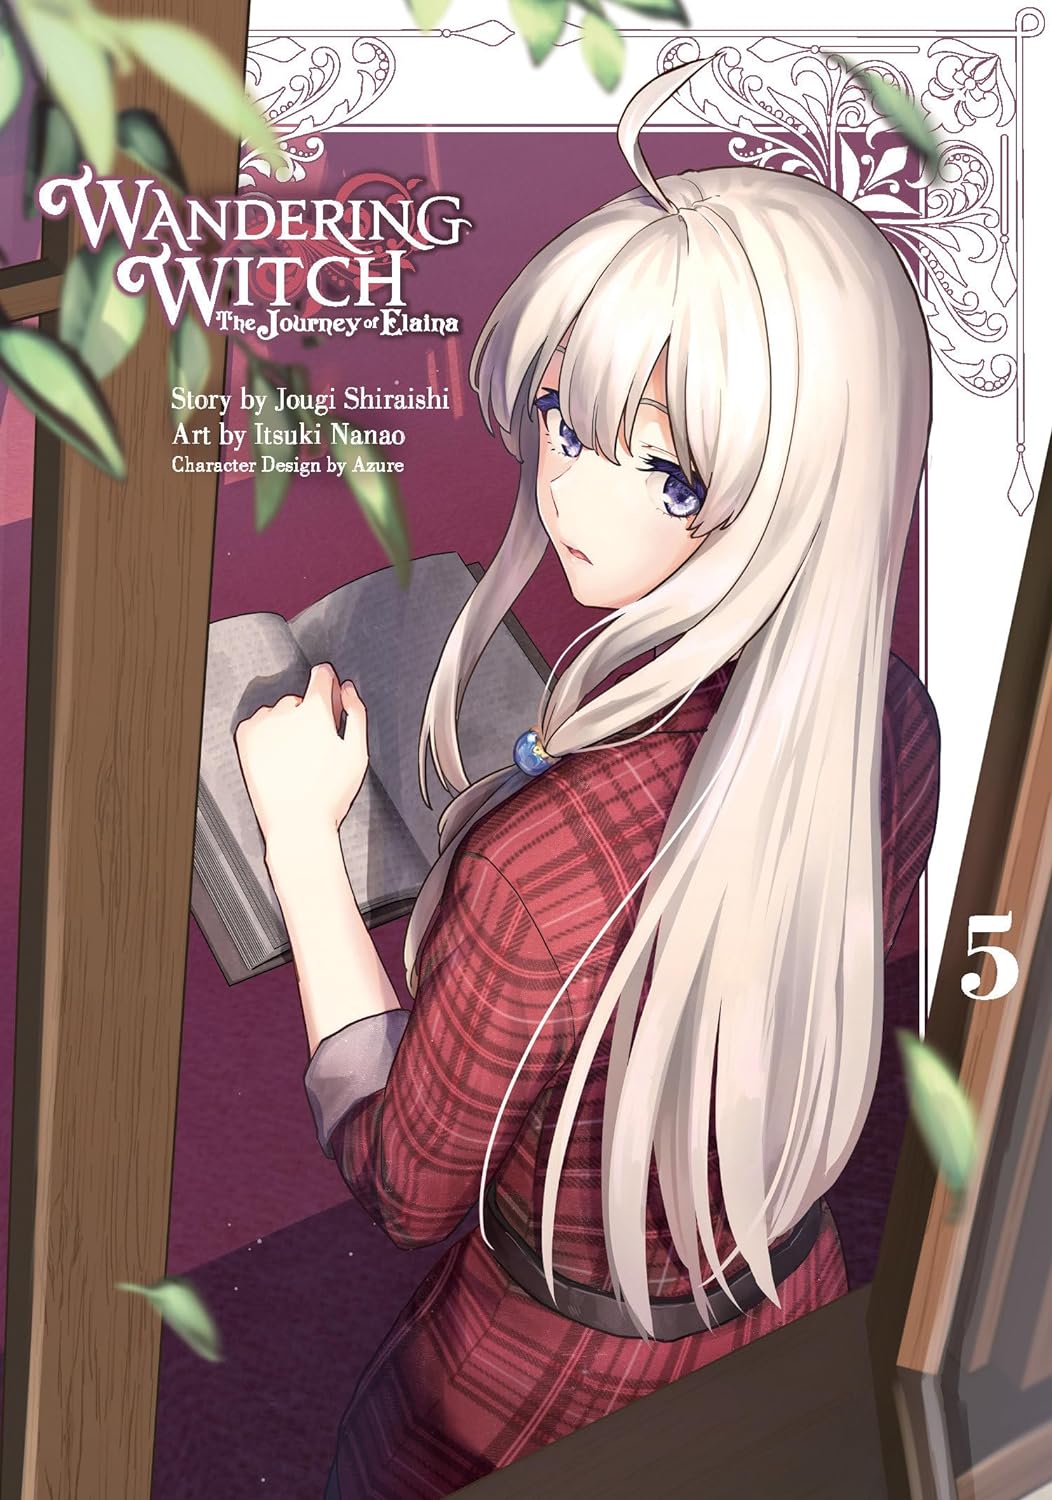 Wandering Witch Vol. 05 (Manga): The Journey of Elaina